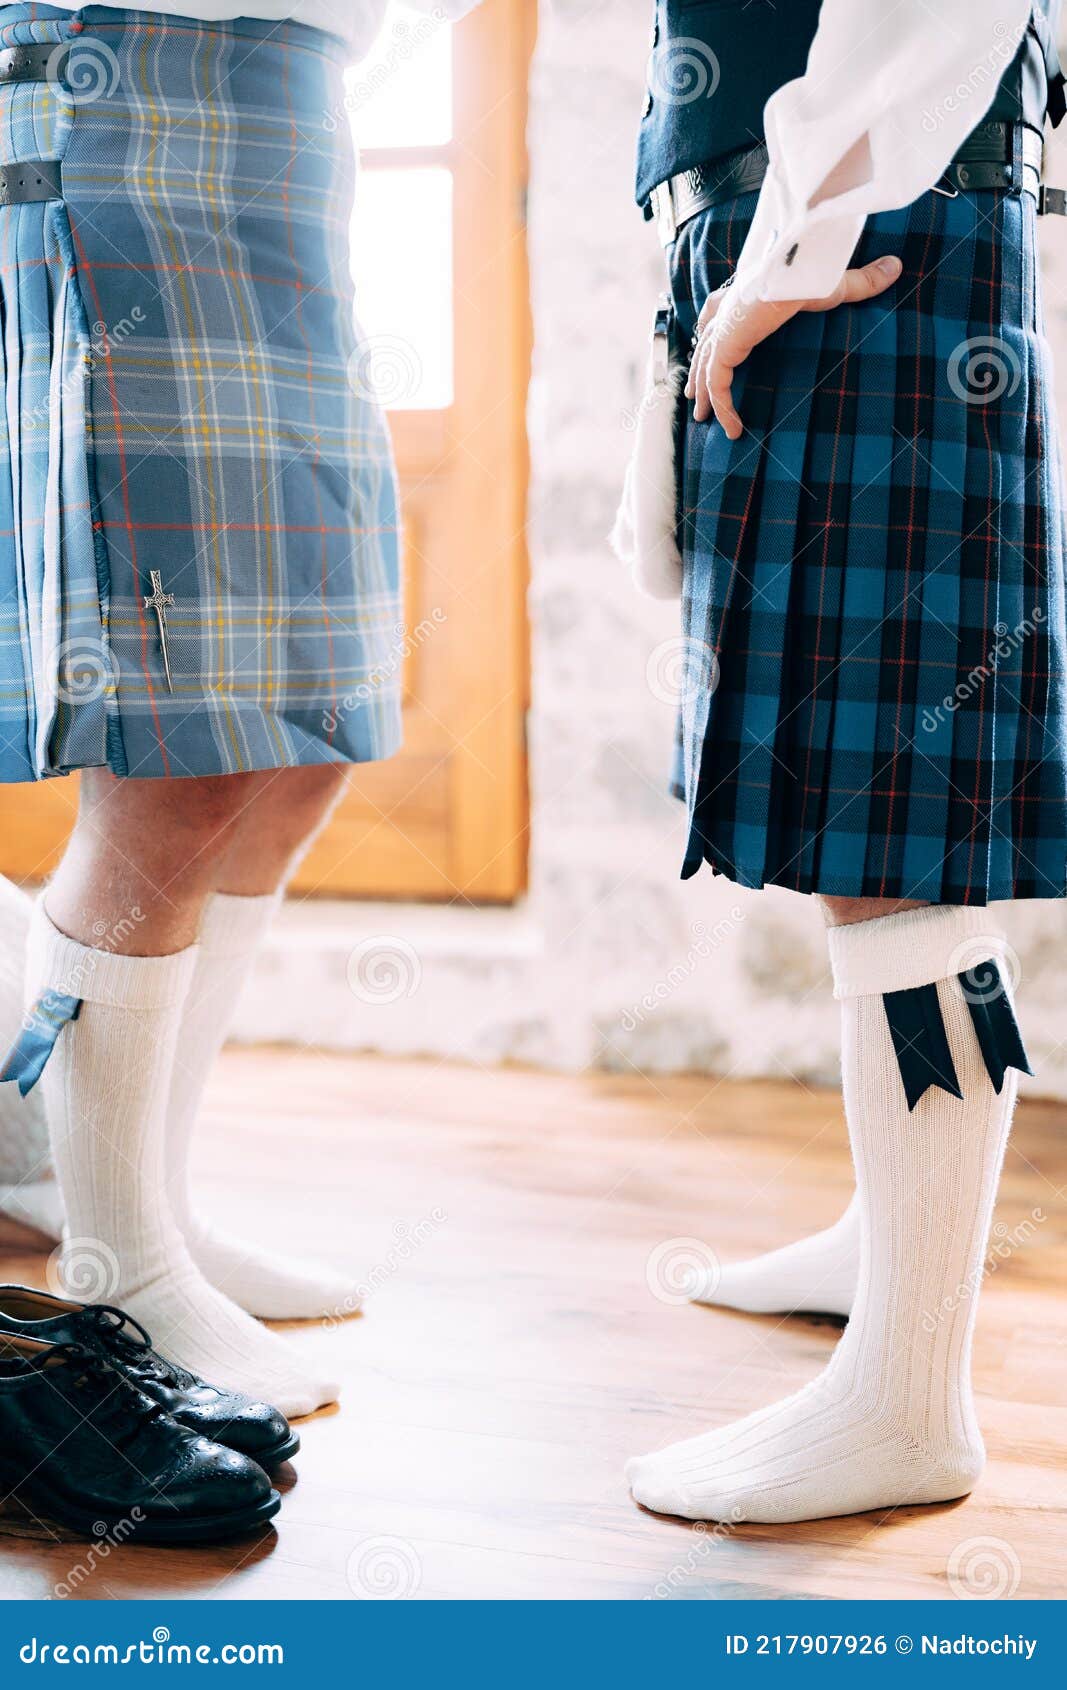 Preparándose Para Una Boda Escocesa. Dos Hombres En Kilts